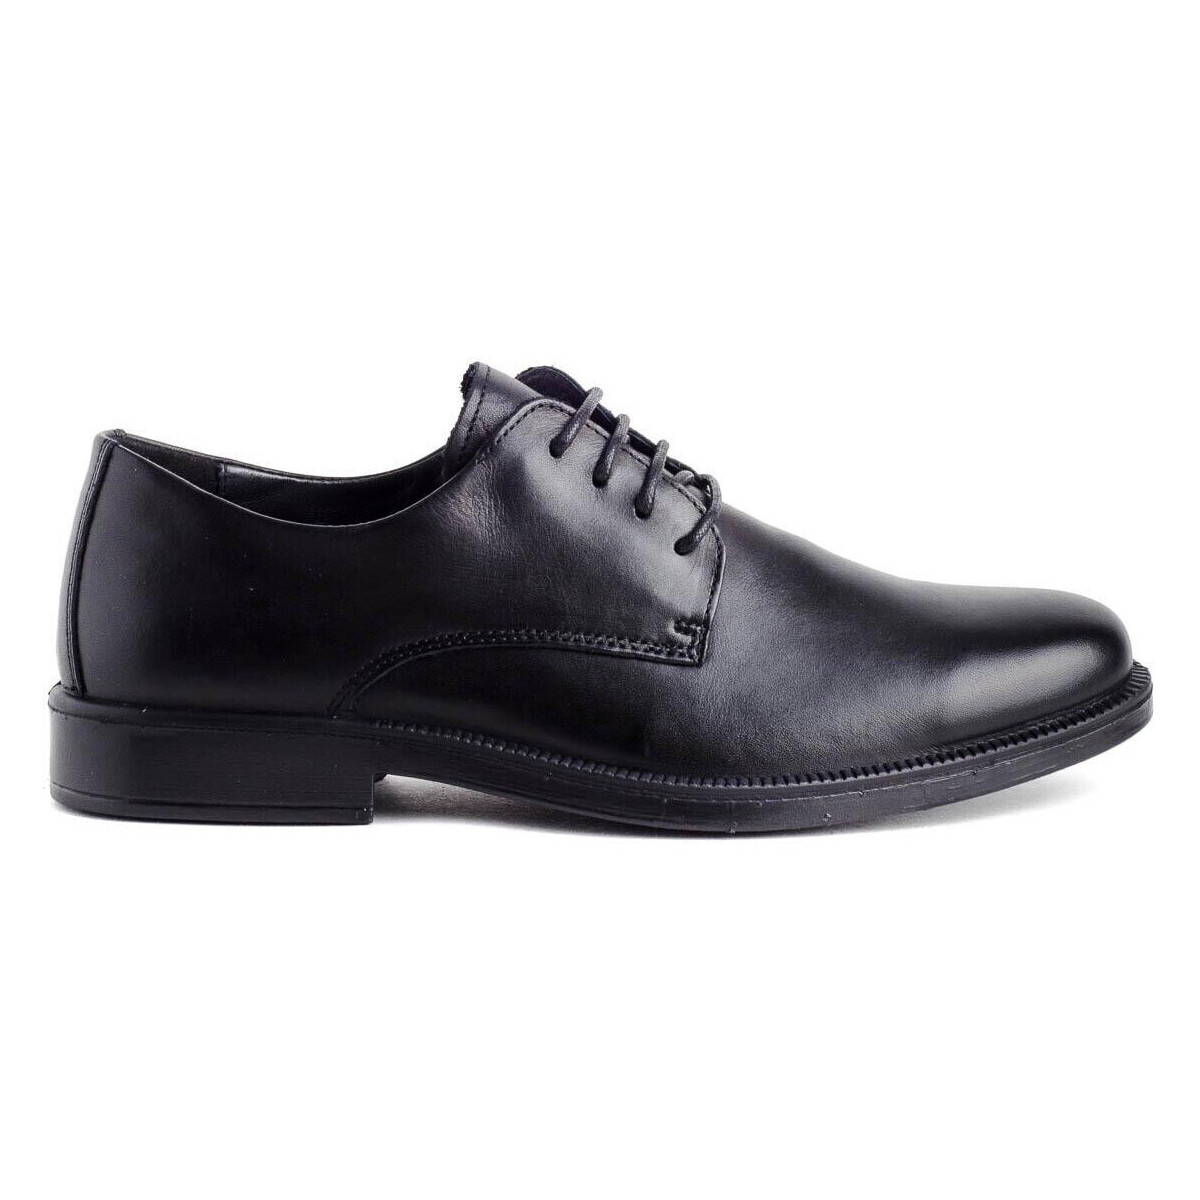 Schuhe Herren Derby-Schuhe & Richelieu Imac 450100 Schwarz